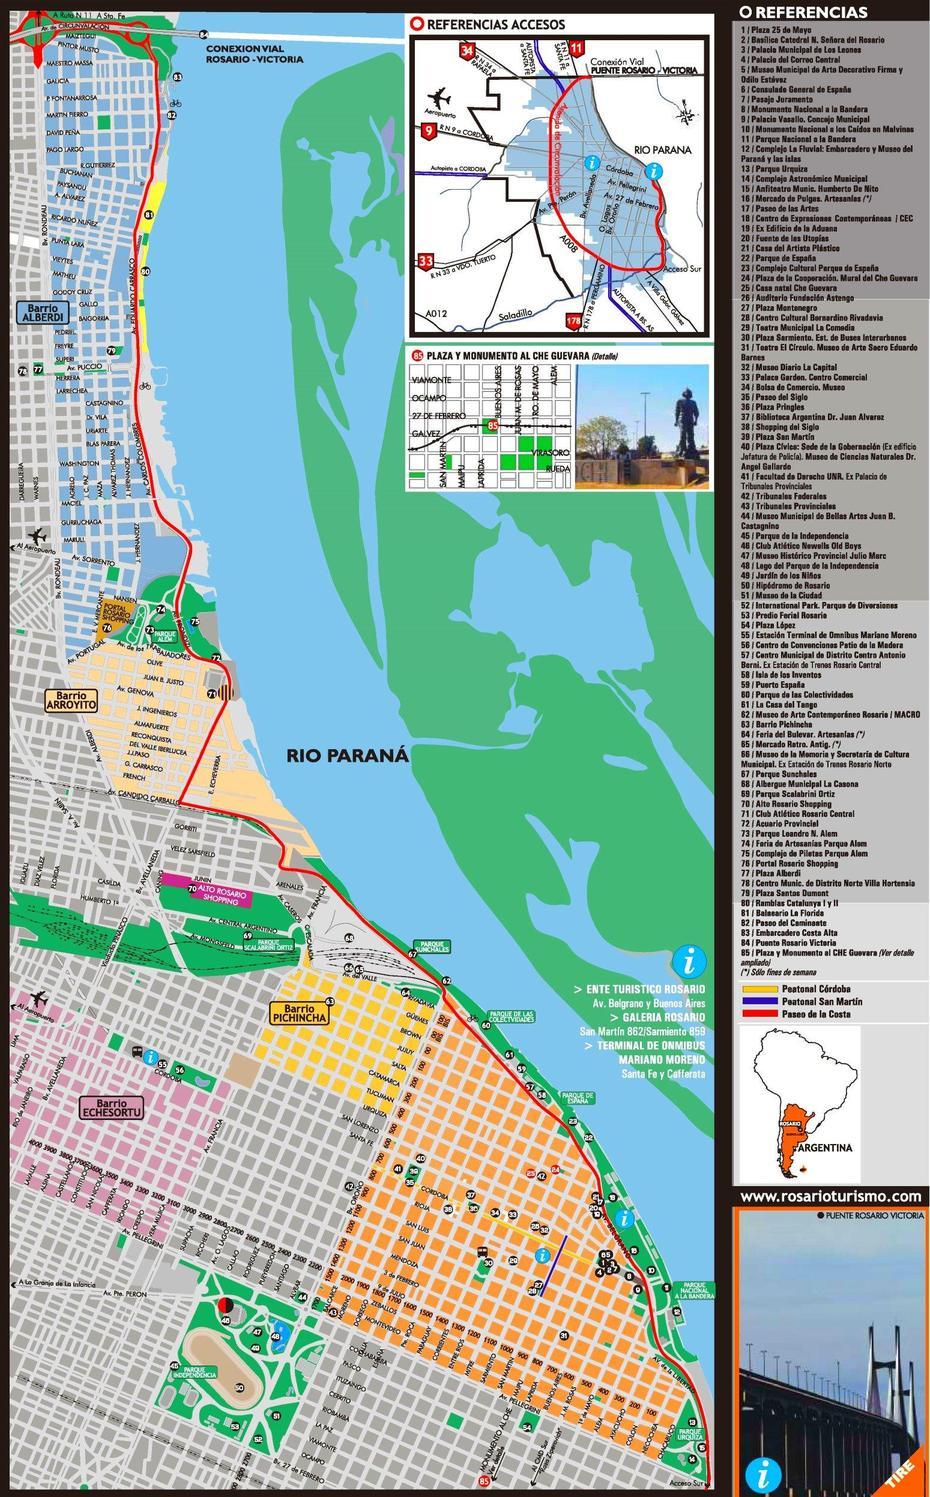 Rosario Tourist Map, Rosario, Argentina, Argentina Country, Pampas Argentina